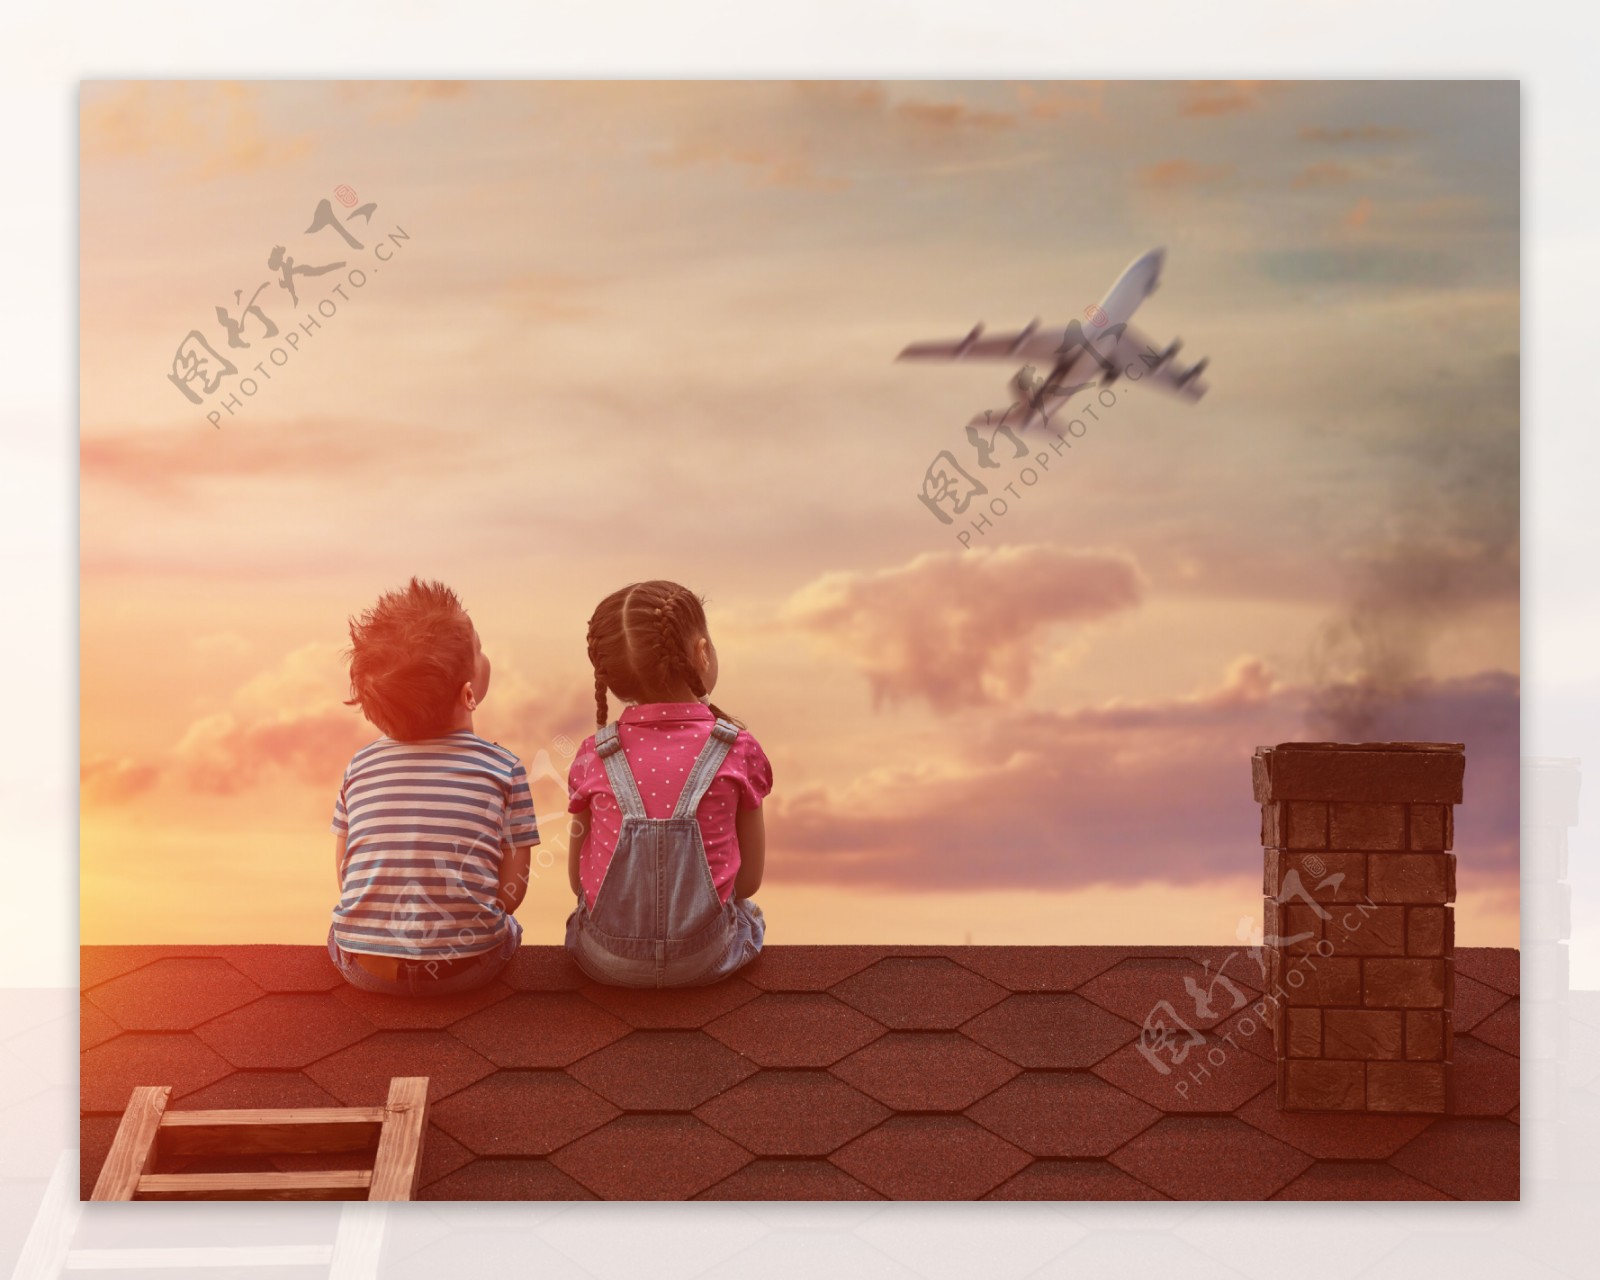 小孩看望飞机